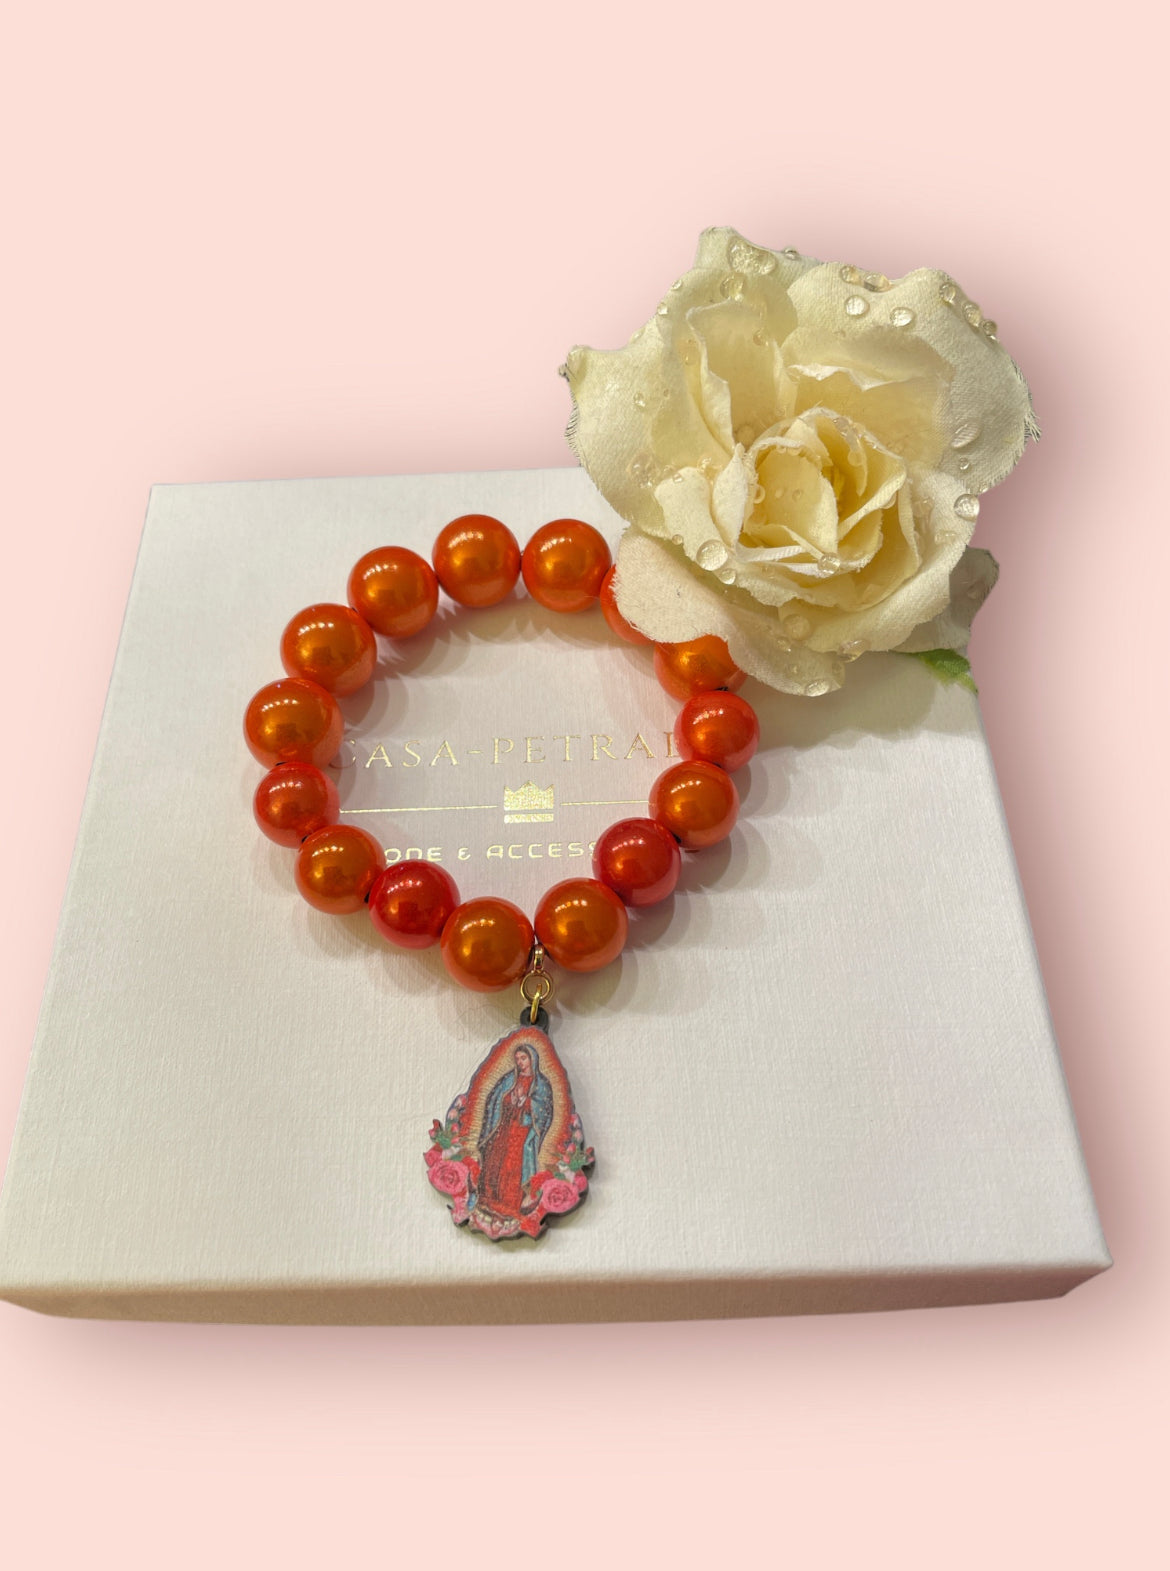 Armband MADONNA aus leuchtenden Miracle Perlen in Orange mit einem Anhänger Madonna